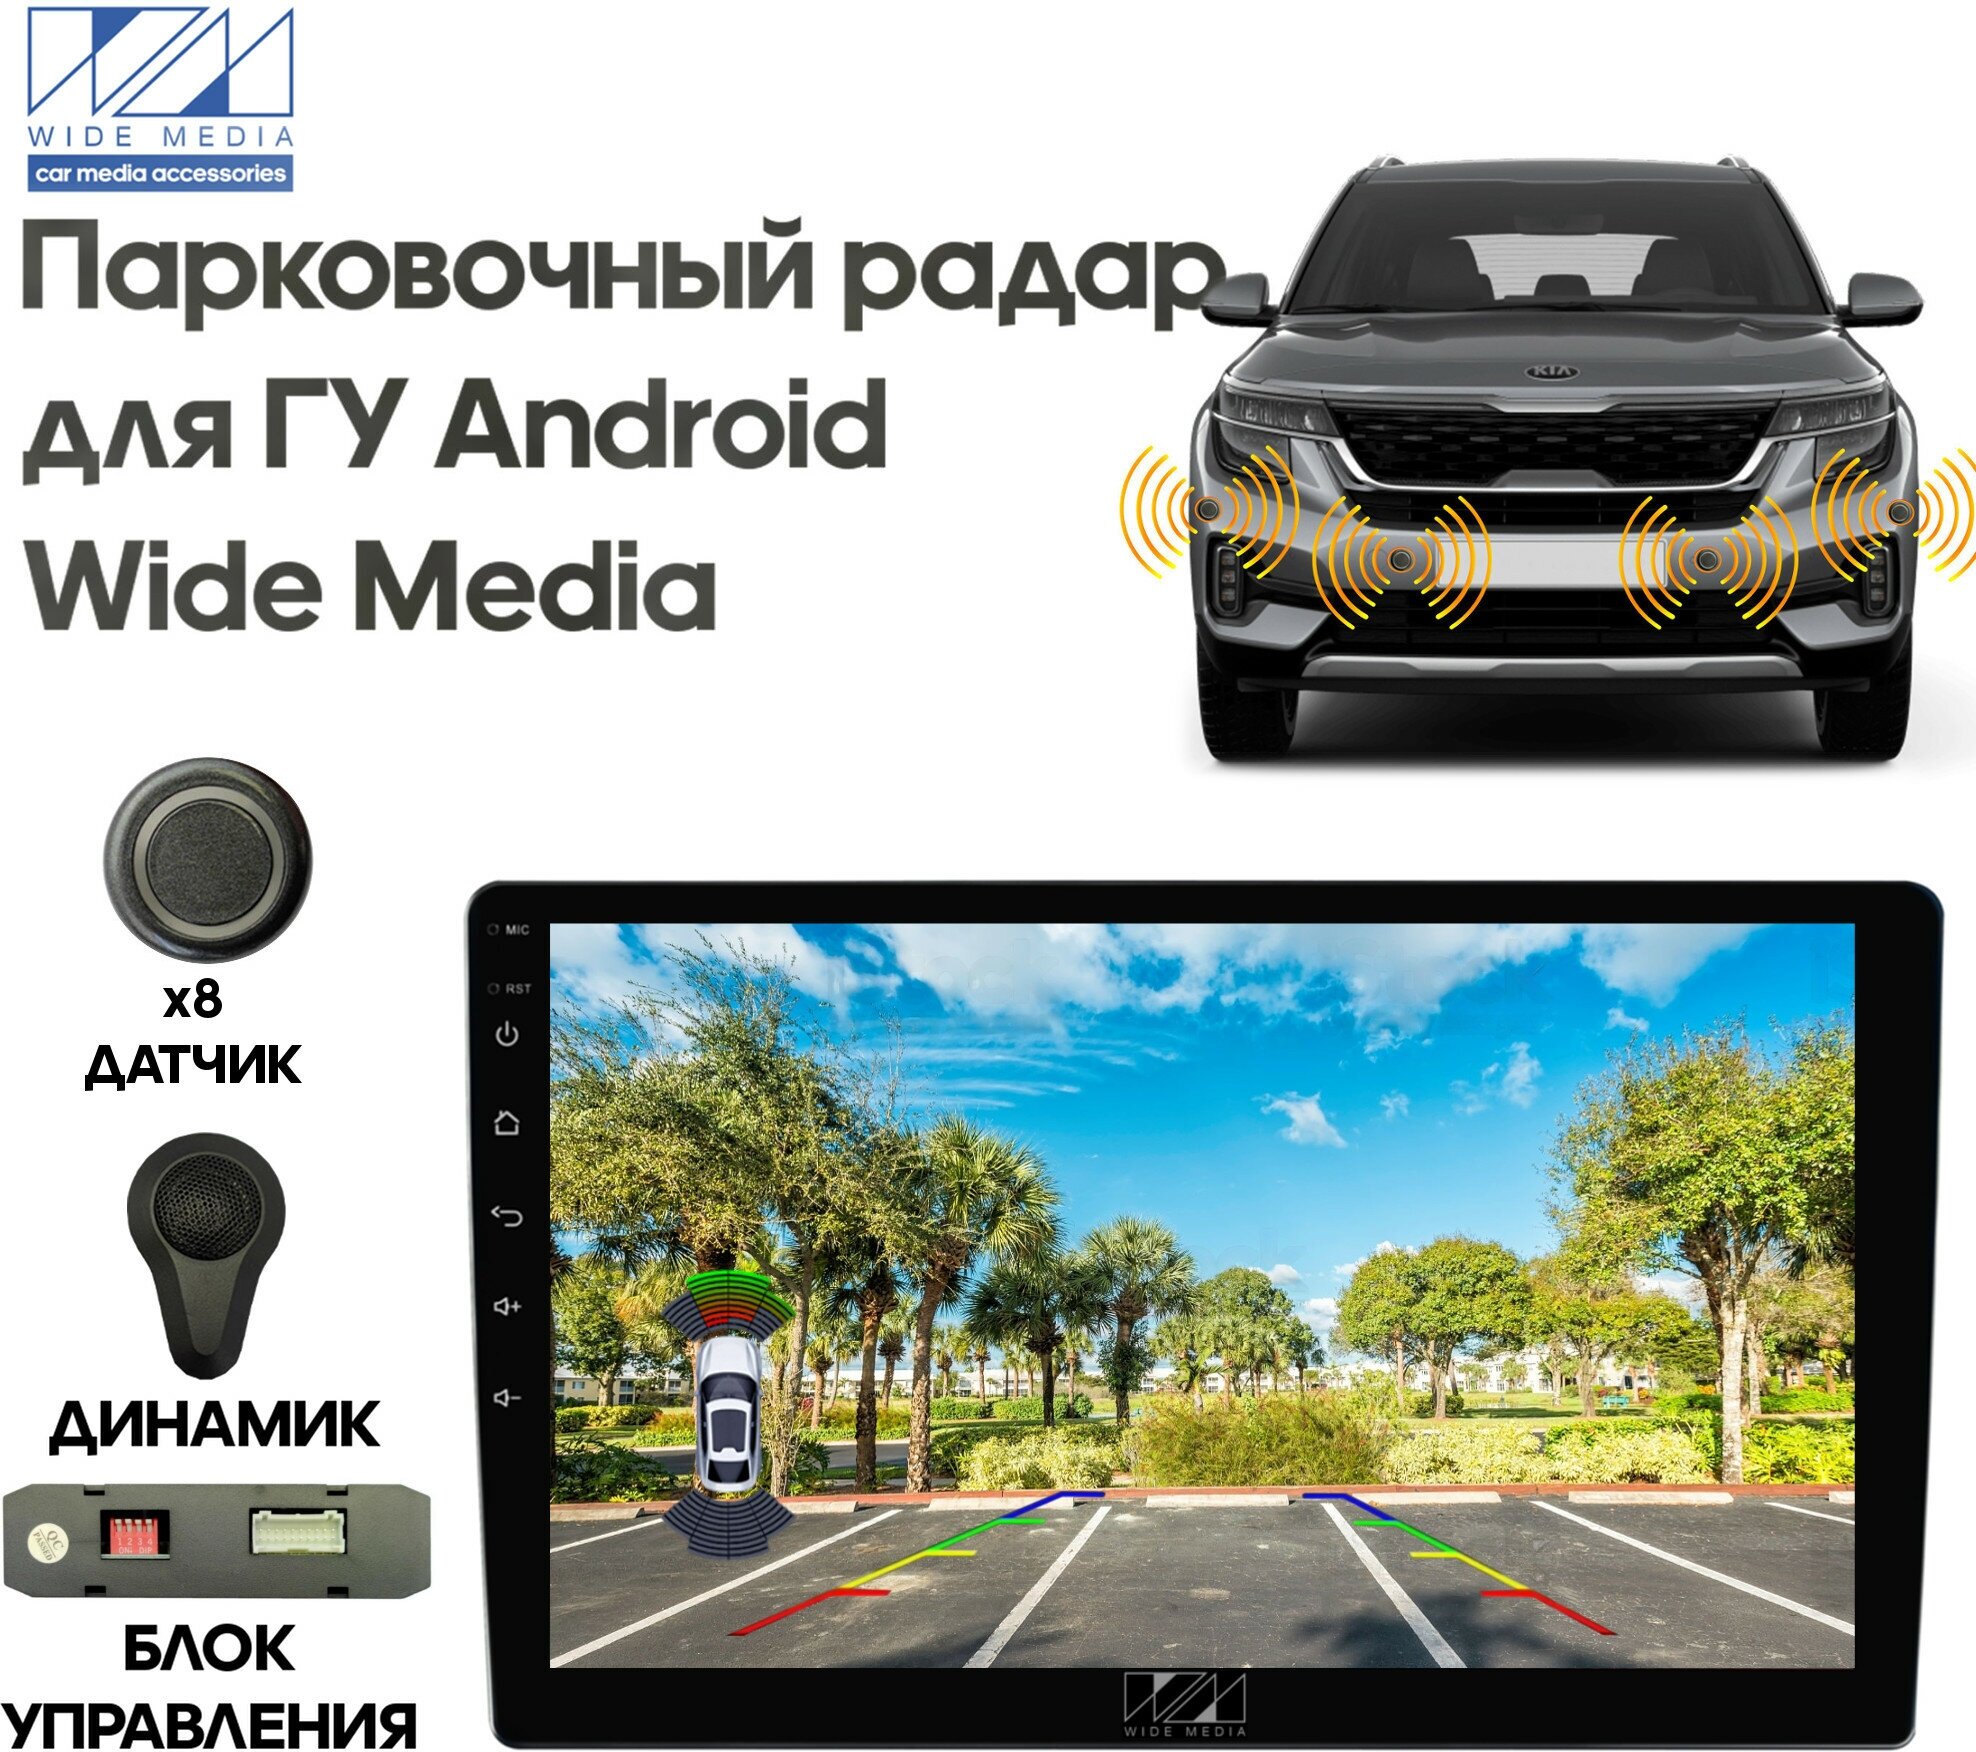 Парковочный радар Wide Media APS-118GR (для ГУ Android, 8 дат. врез, серый)